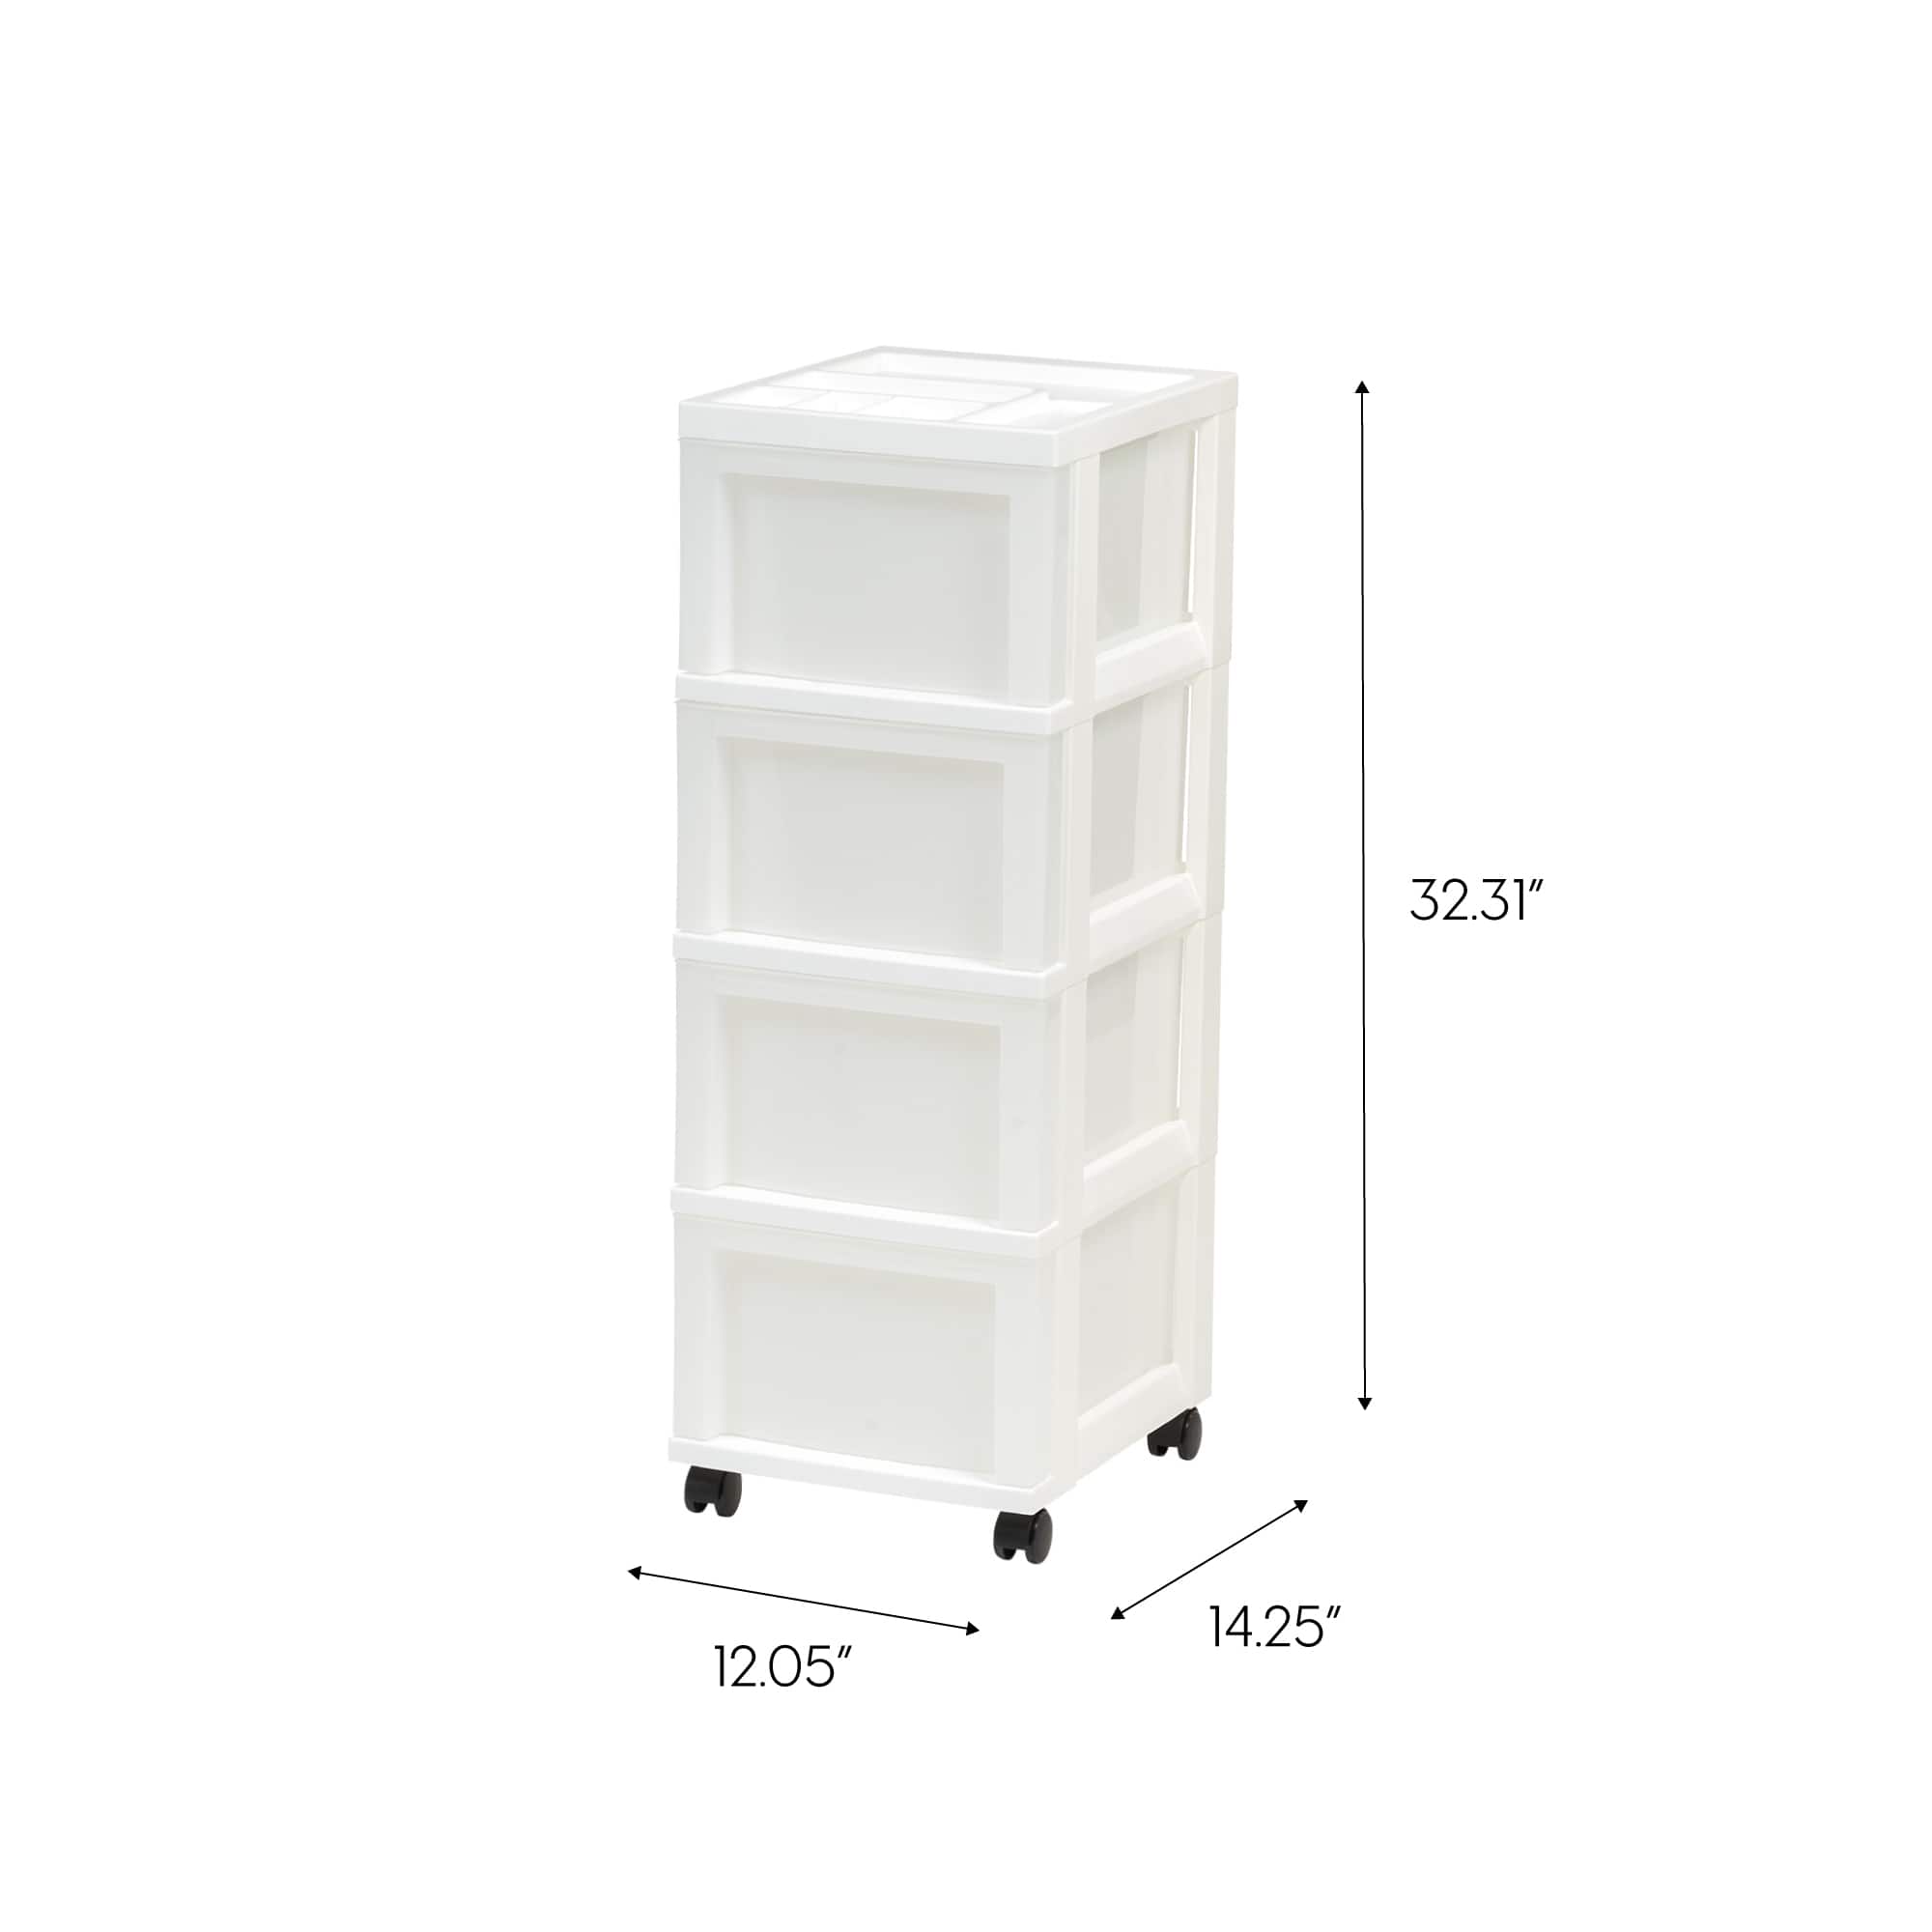 IRIS White 4-Drawer Medium Cart With Organizer Top